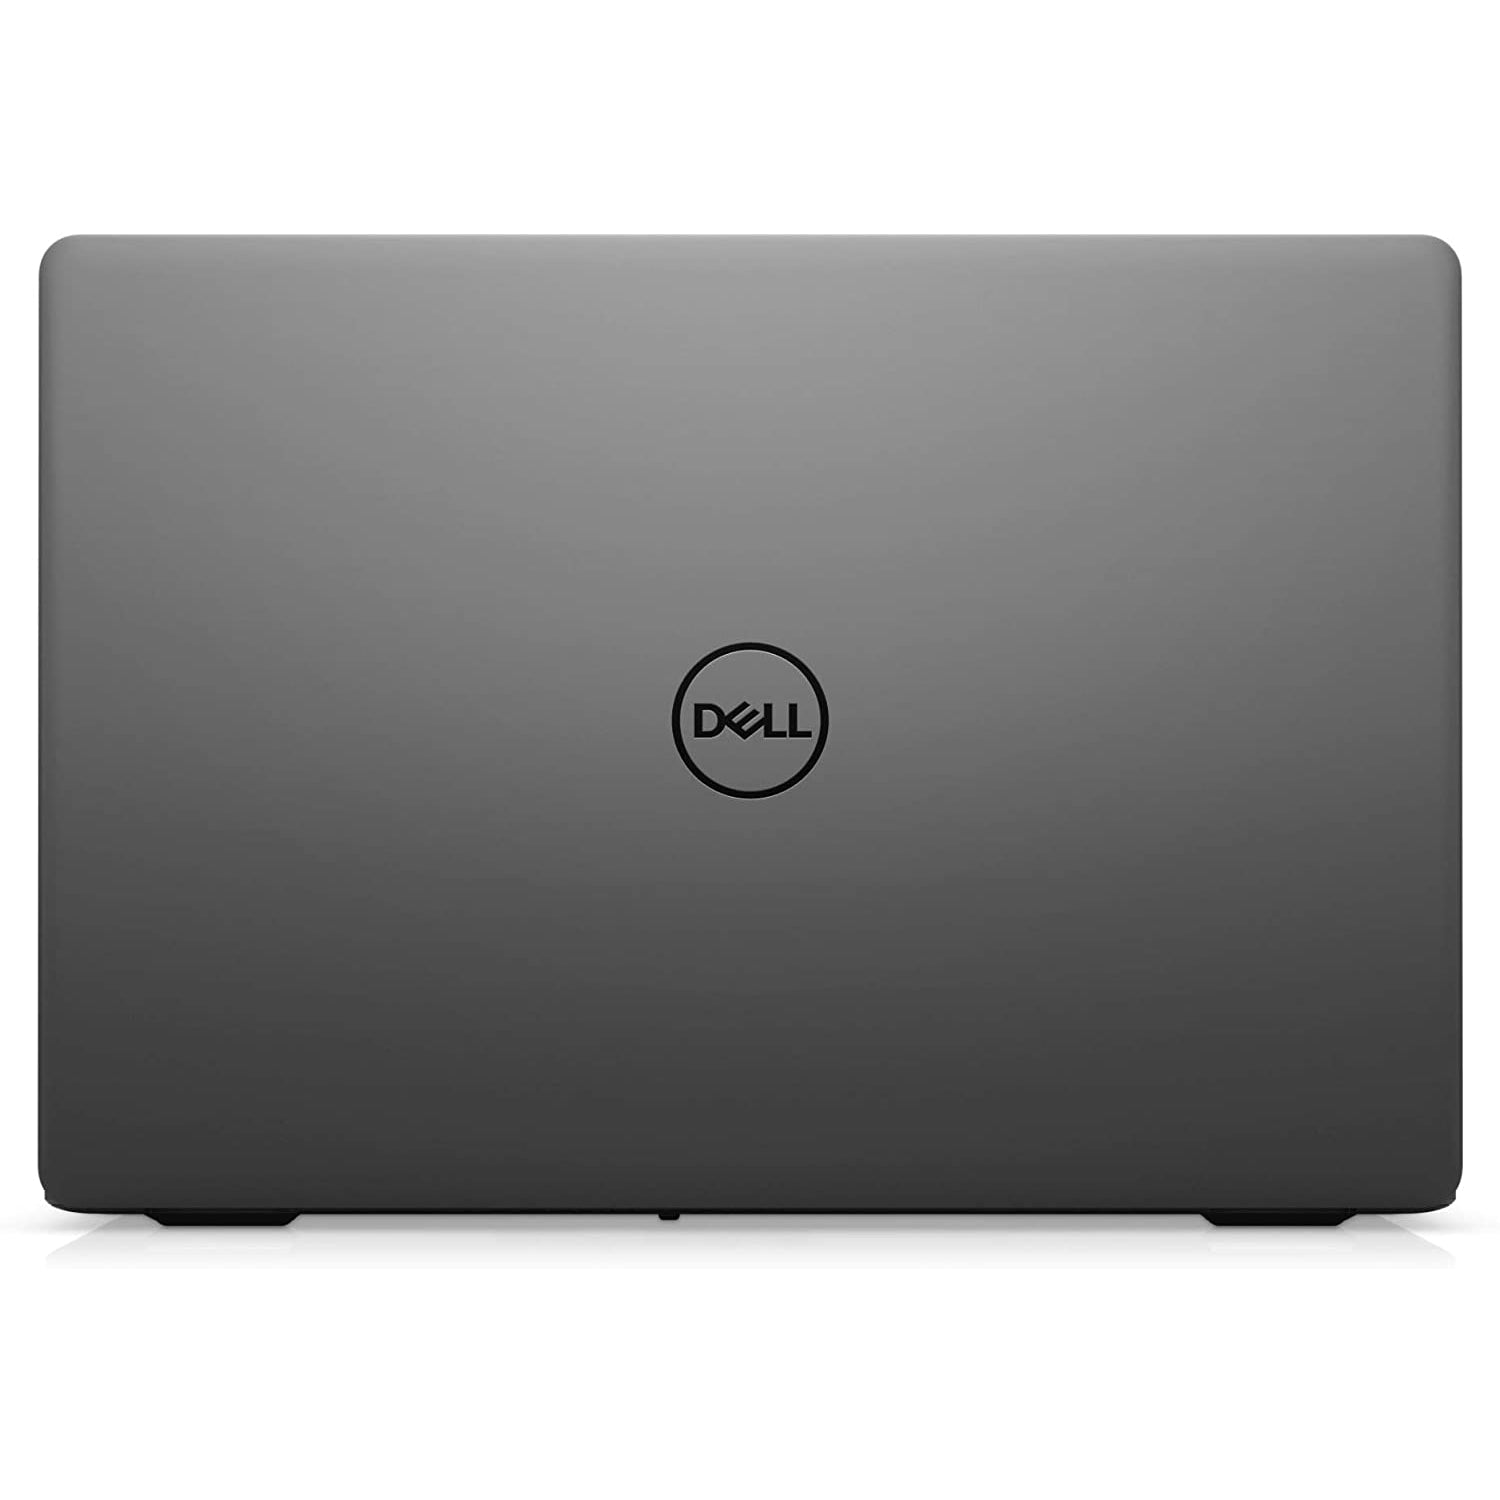 Dell Inspiron 15 5301 Laptop, Intel Core i5, 8GB, 256GB, 15.6" - Black